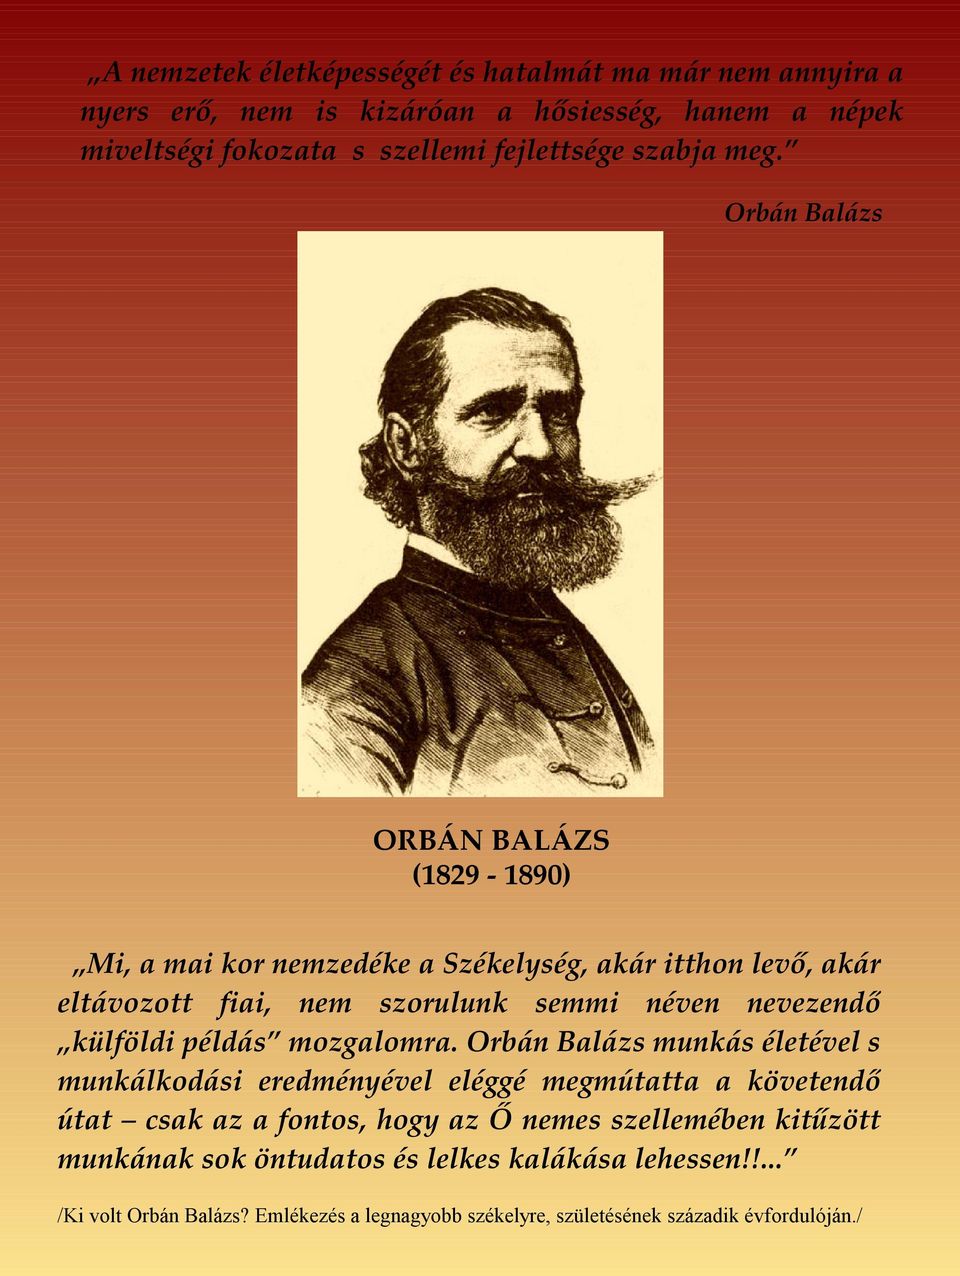 Orbán Balázs ORBÁN BALÁZS (1829-1890) Mi, a mai kor nemzedéke a Székelység, akár itthon levő, akár eltávozott fiai, nem szorulunk semmi néven nevezendő külföldi